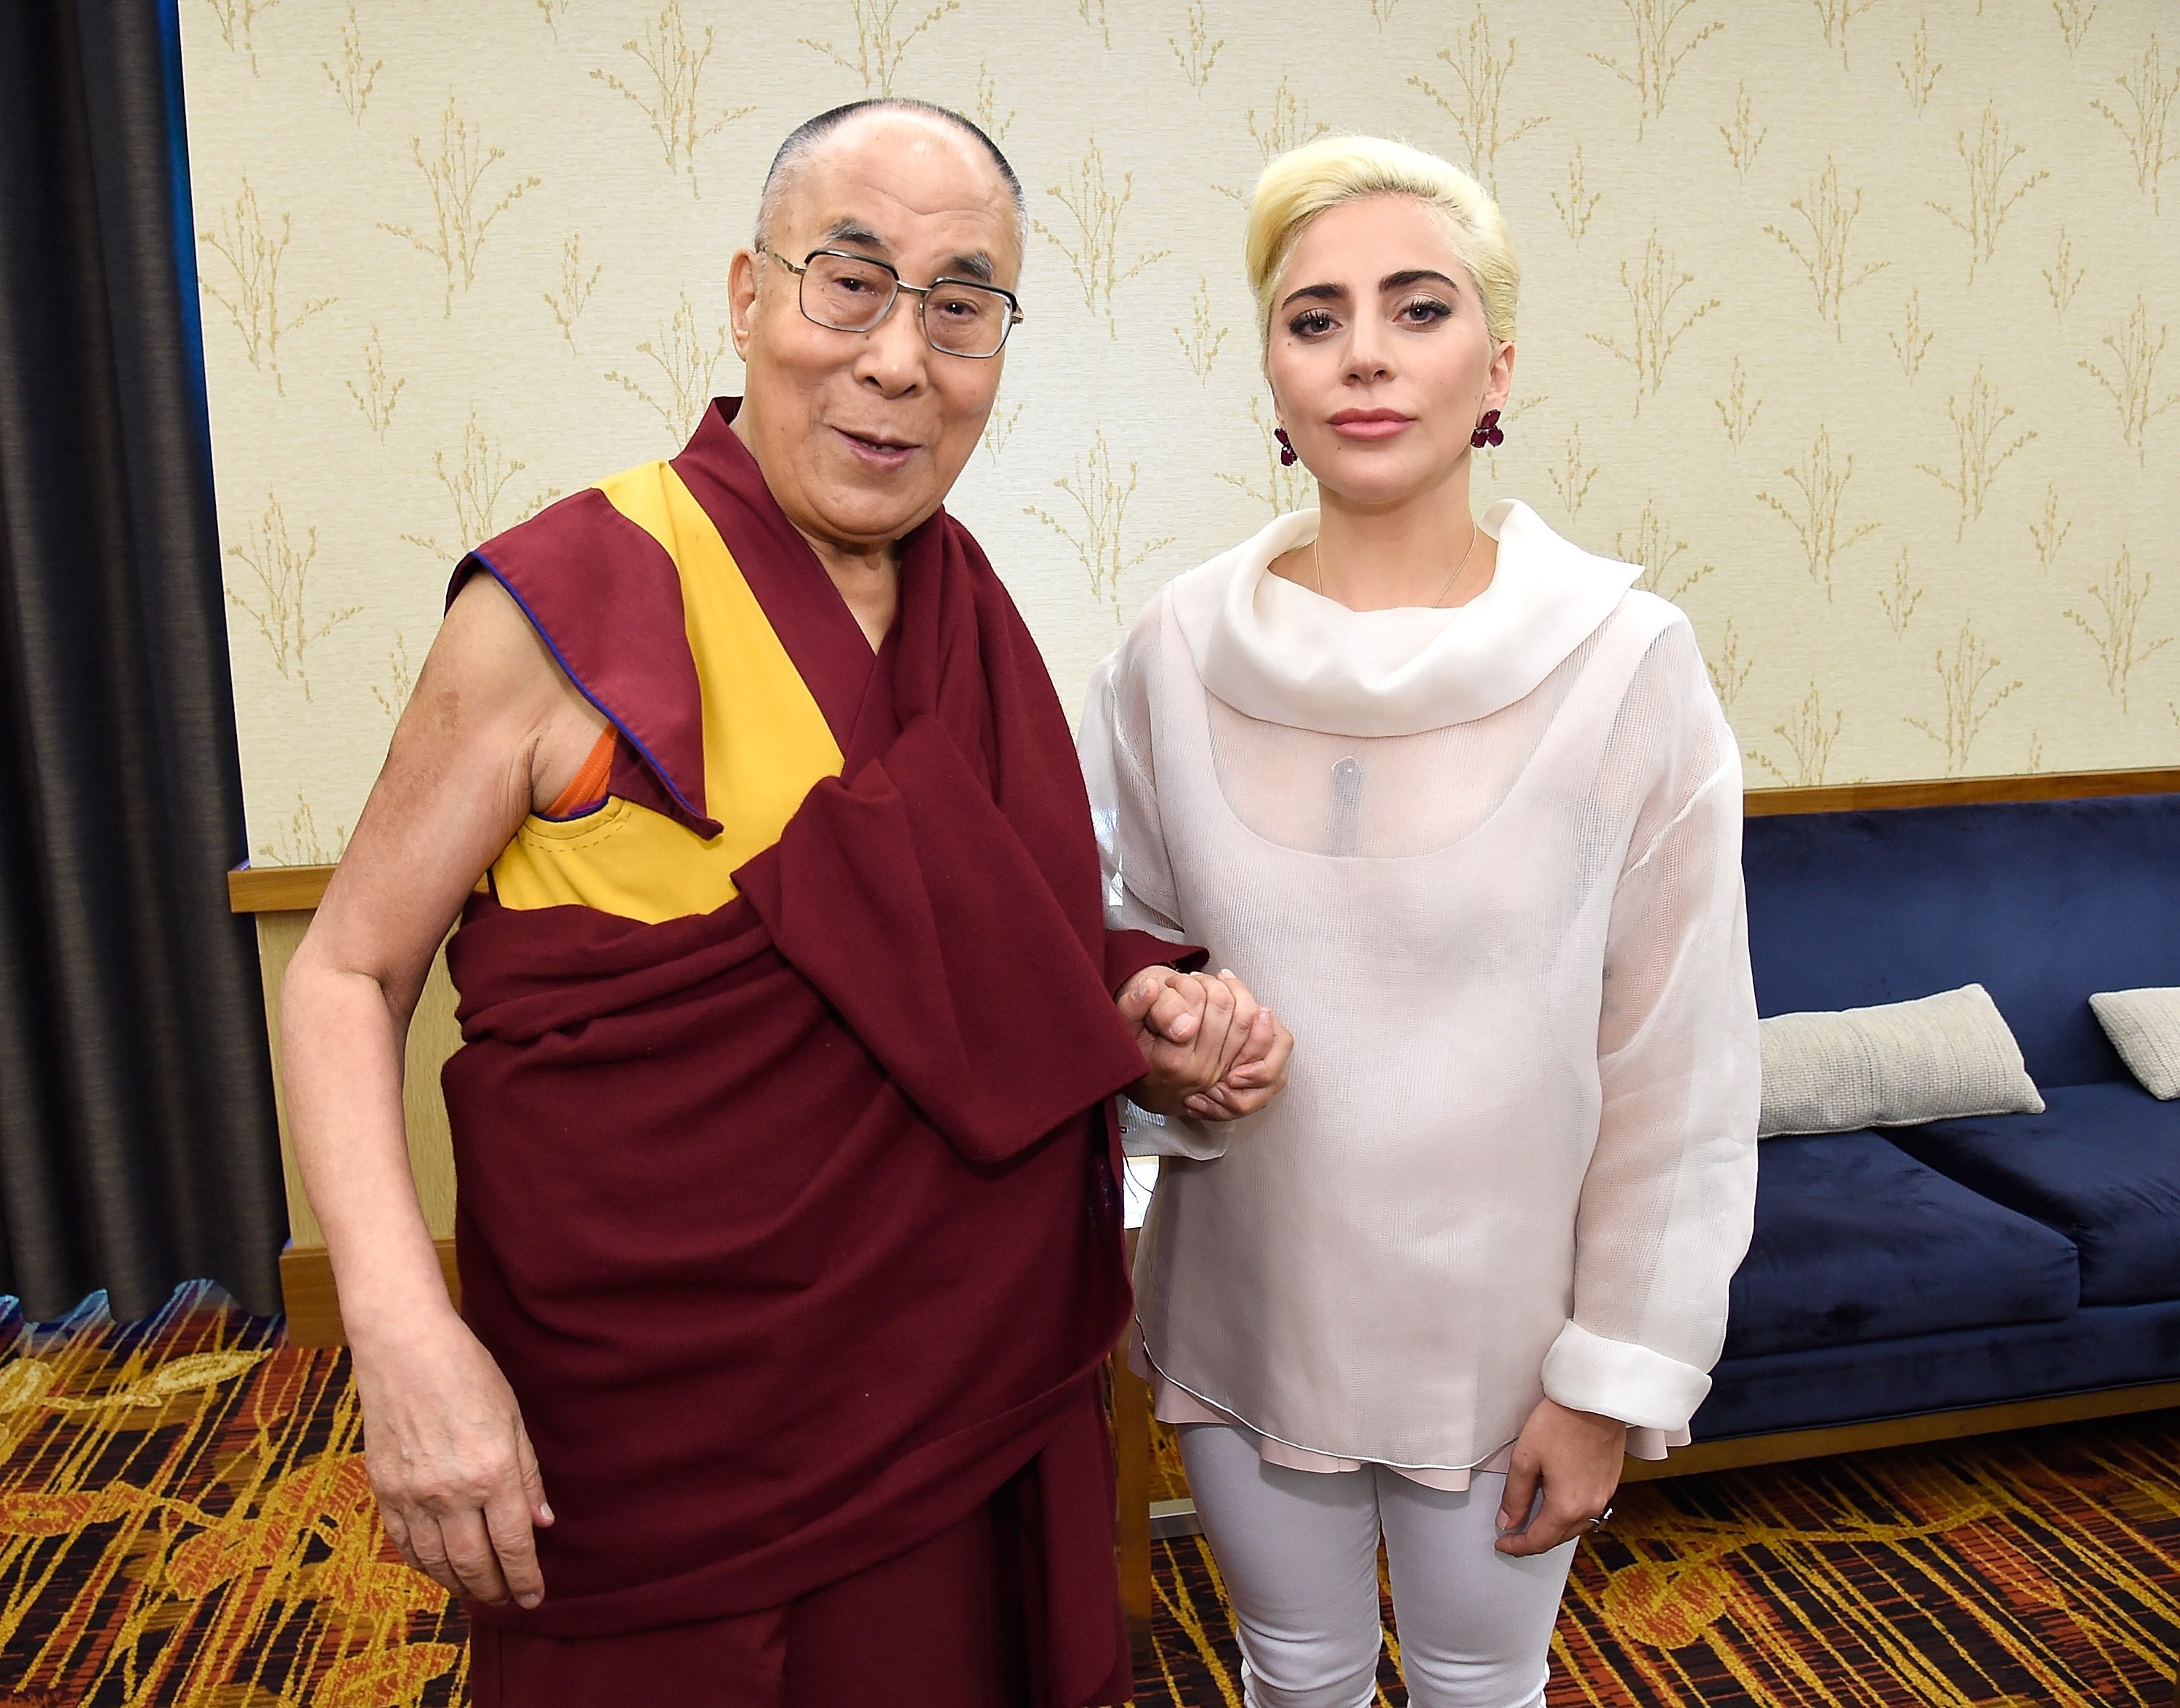 His Holiness the Dalai Lama and Lady Gaga